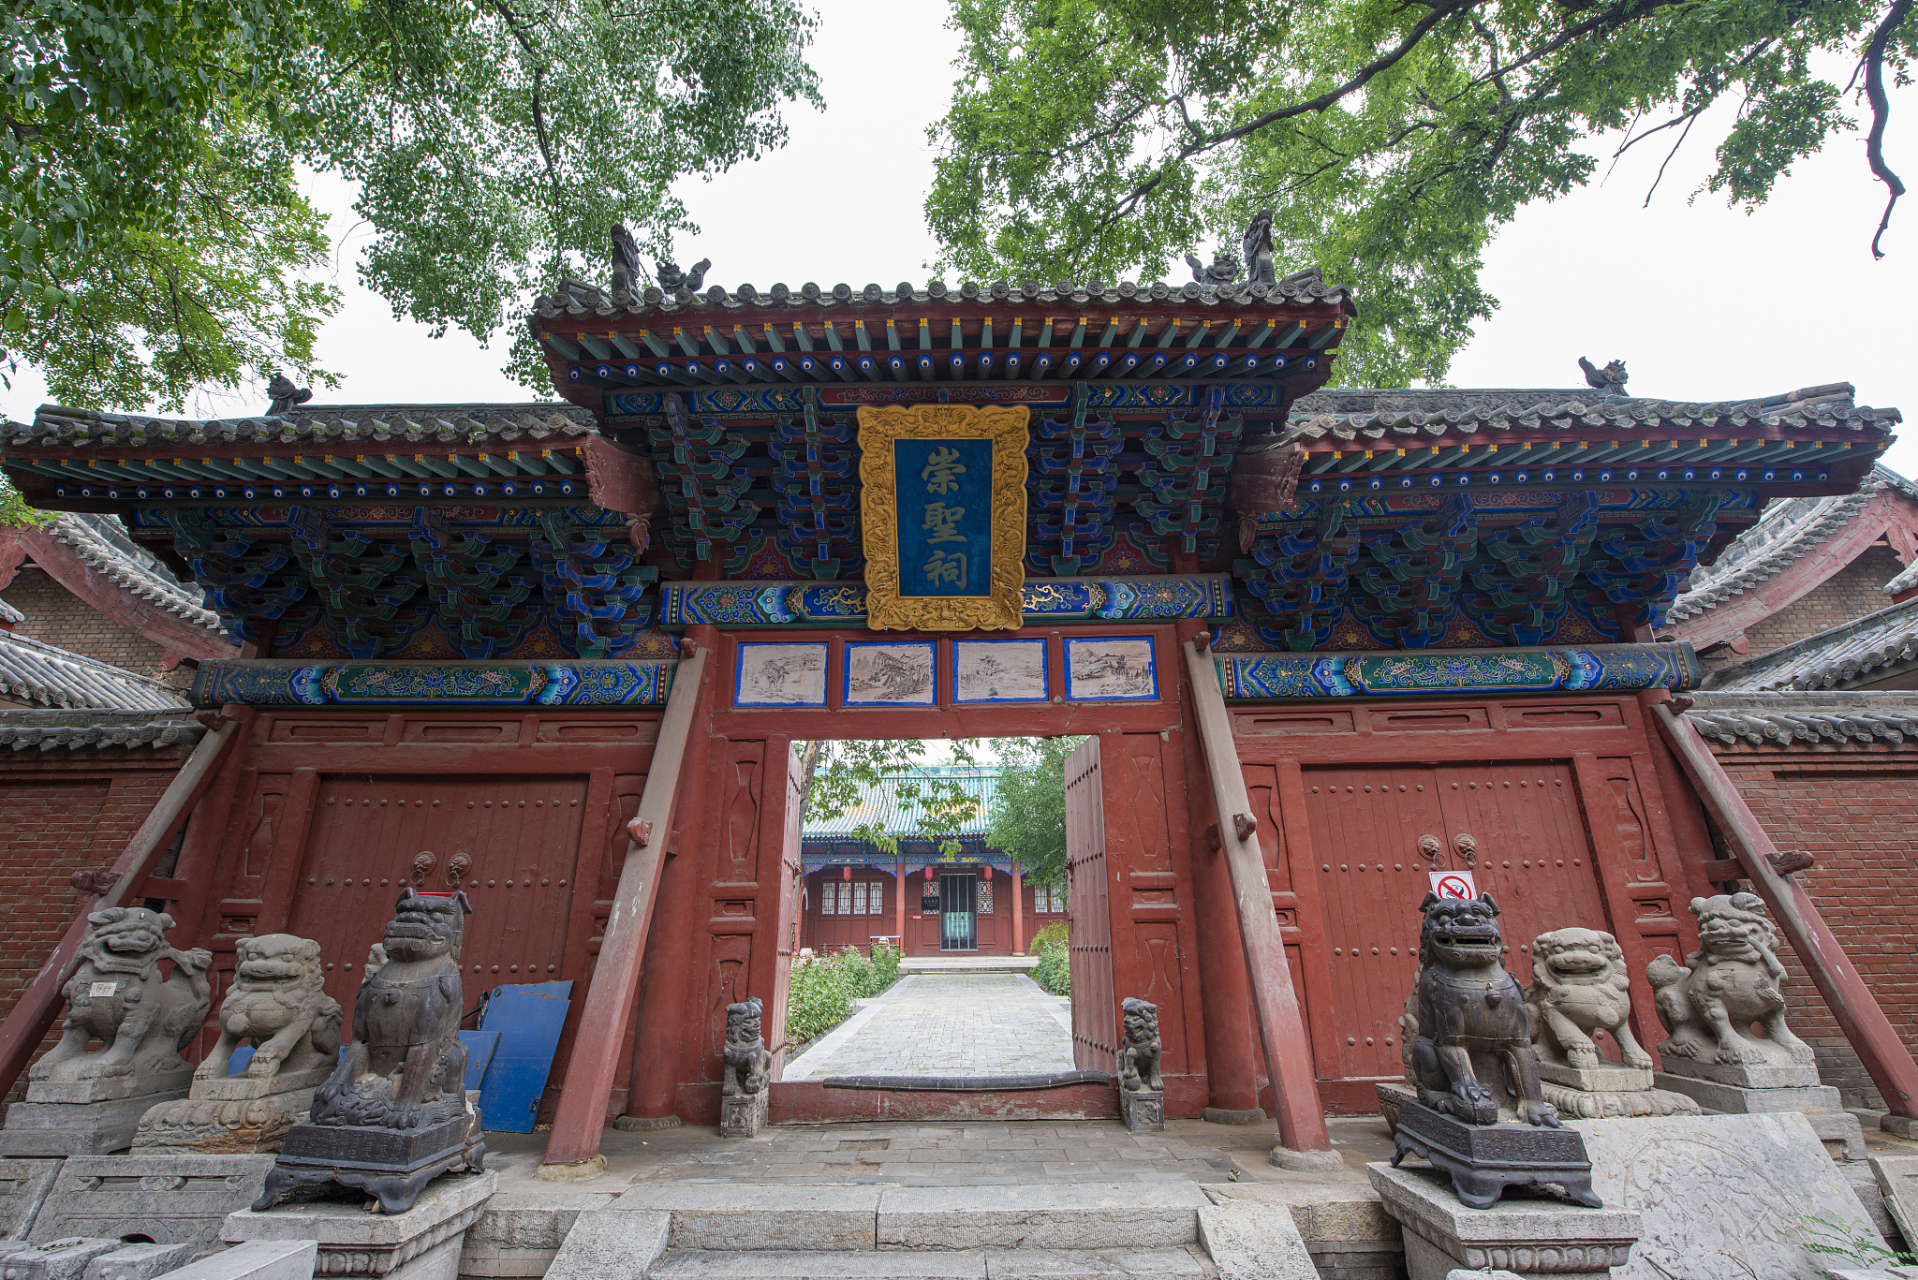 今天我要带大家去探访一个充满神秘与历史的地方——山西舜帝陵庙!